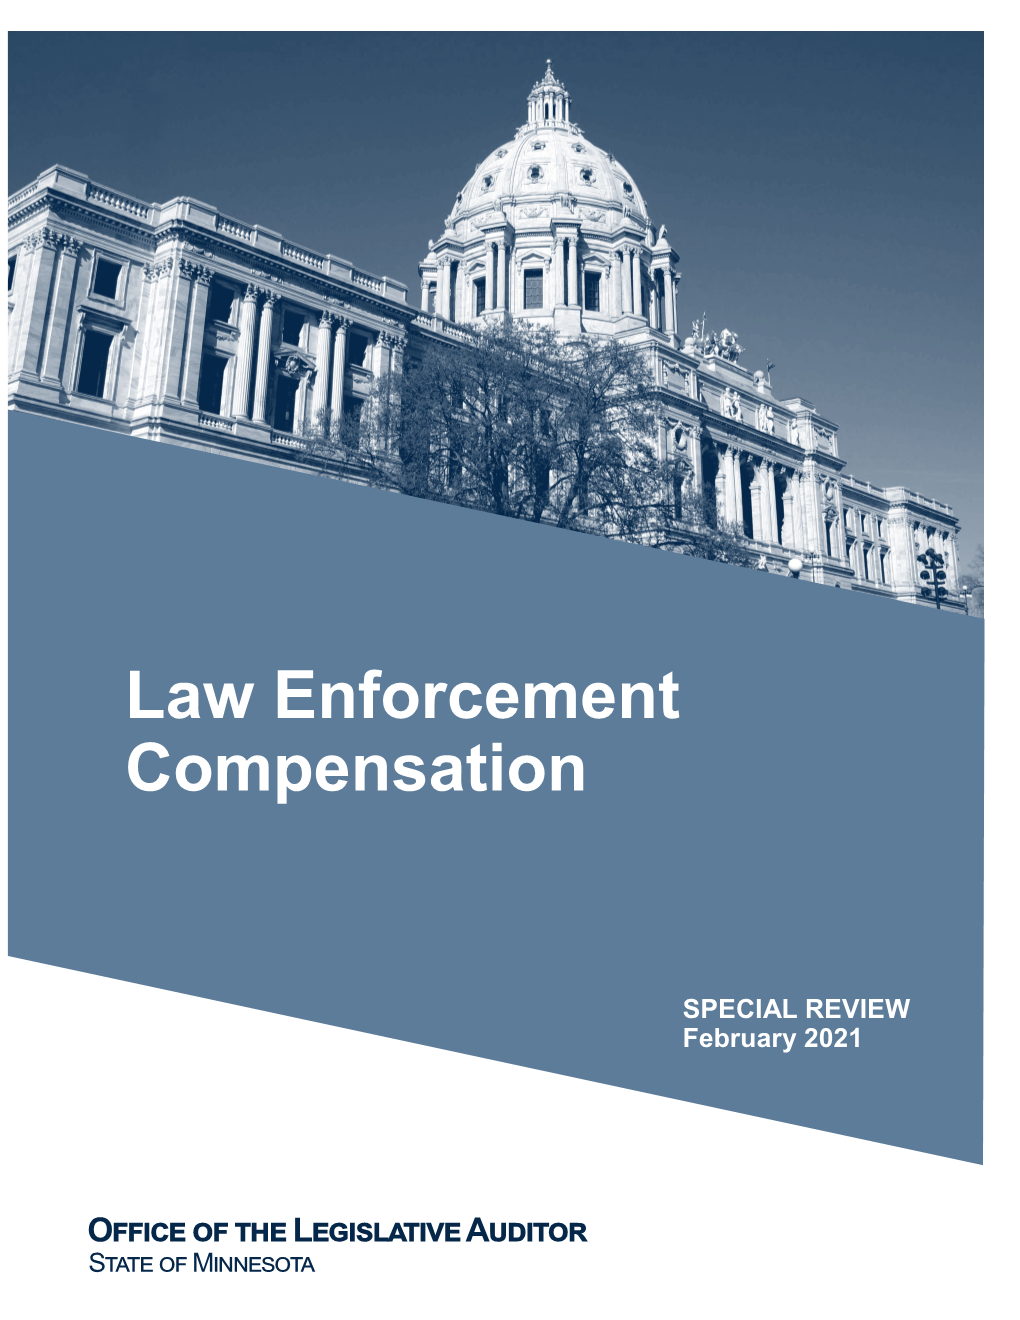 Law Enforcement Compensation